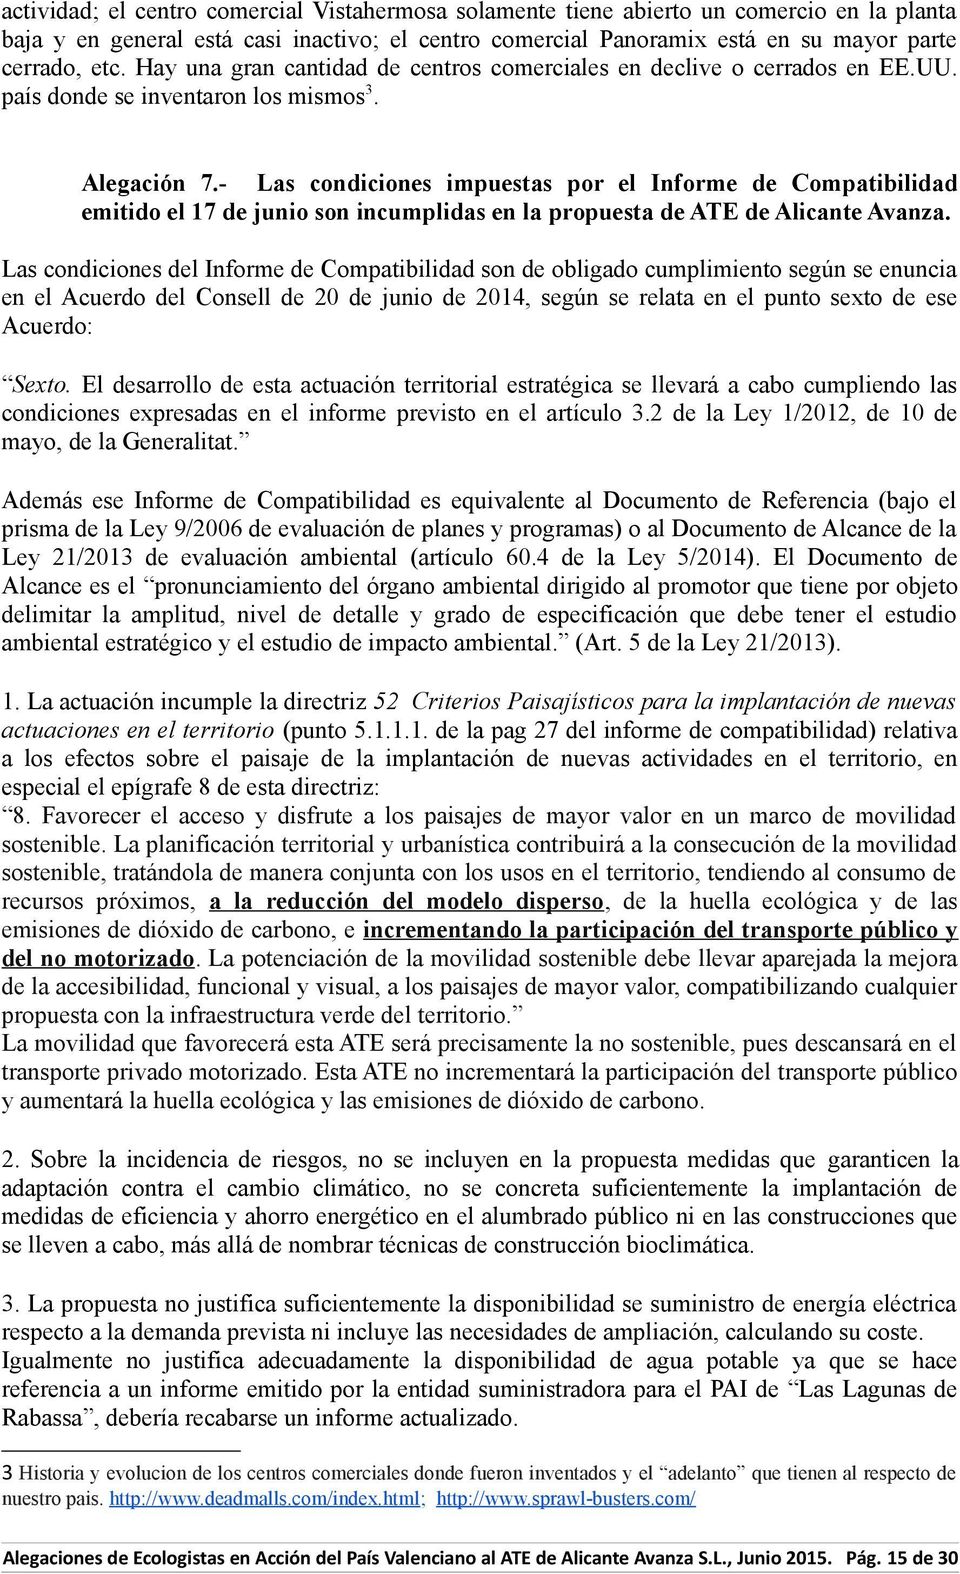 - Las condiciones impuestas por el Informe de Compatibilidad emitido el 17 de junio son incumplidas en la propuesta de ATE de Alicante Avanza.